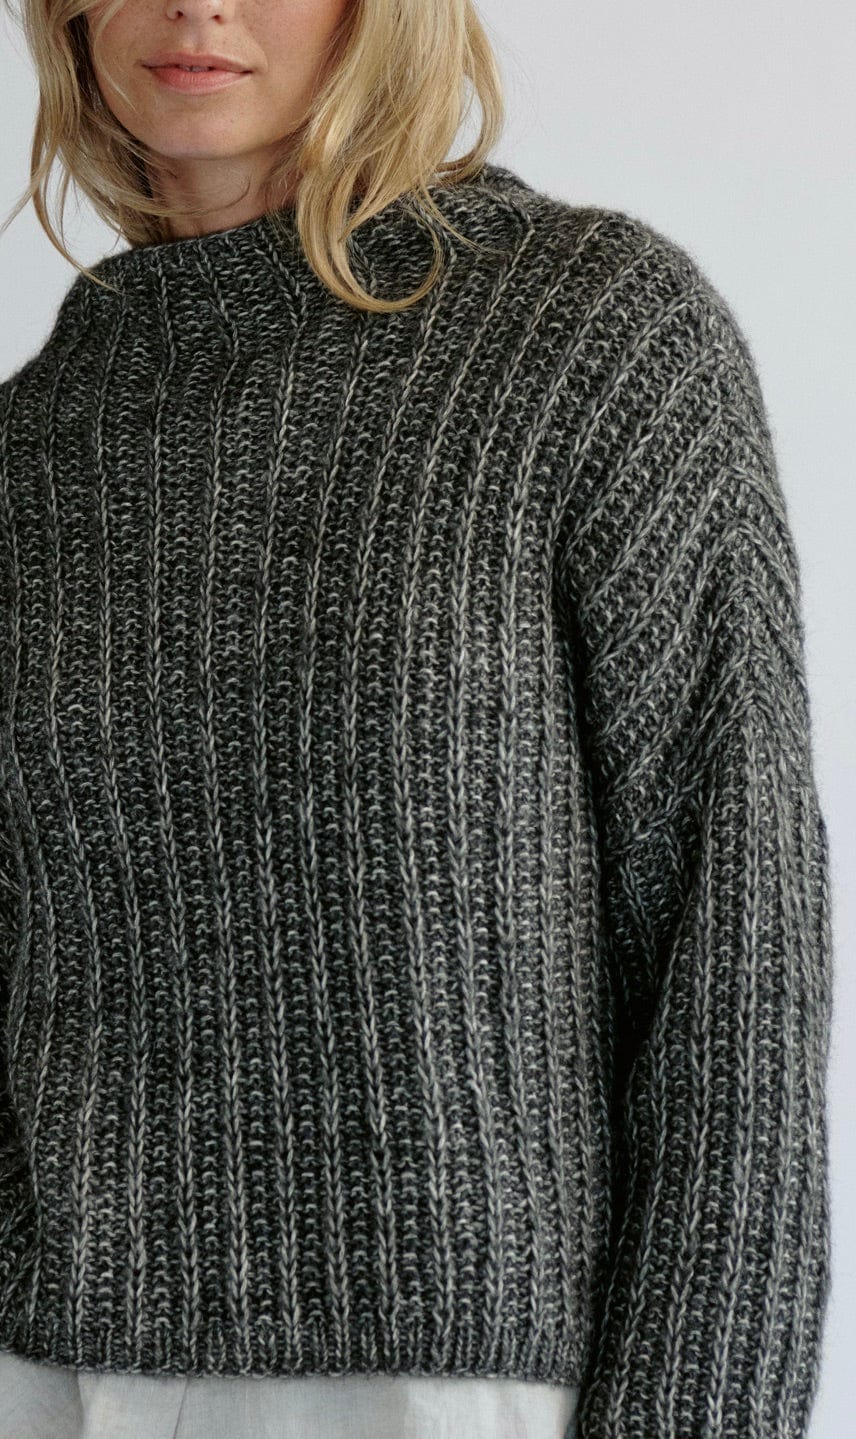 Pullover mit Rippenmuster - NATURAL ALPACA PELO - Strickset von LANA GROSSA jetzt online kaufen bei OONIQUE